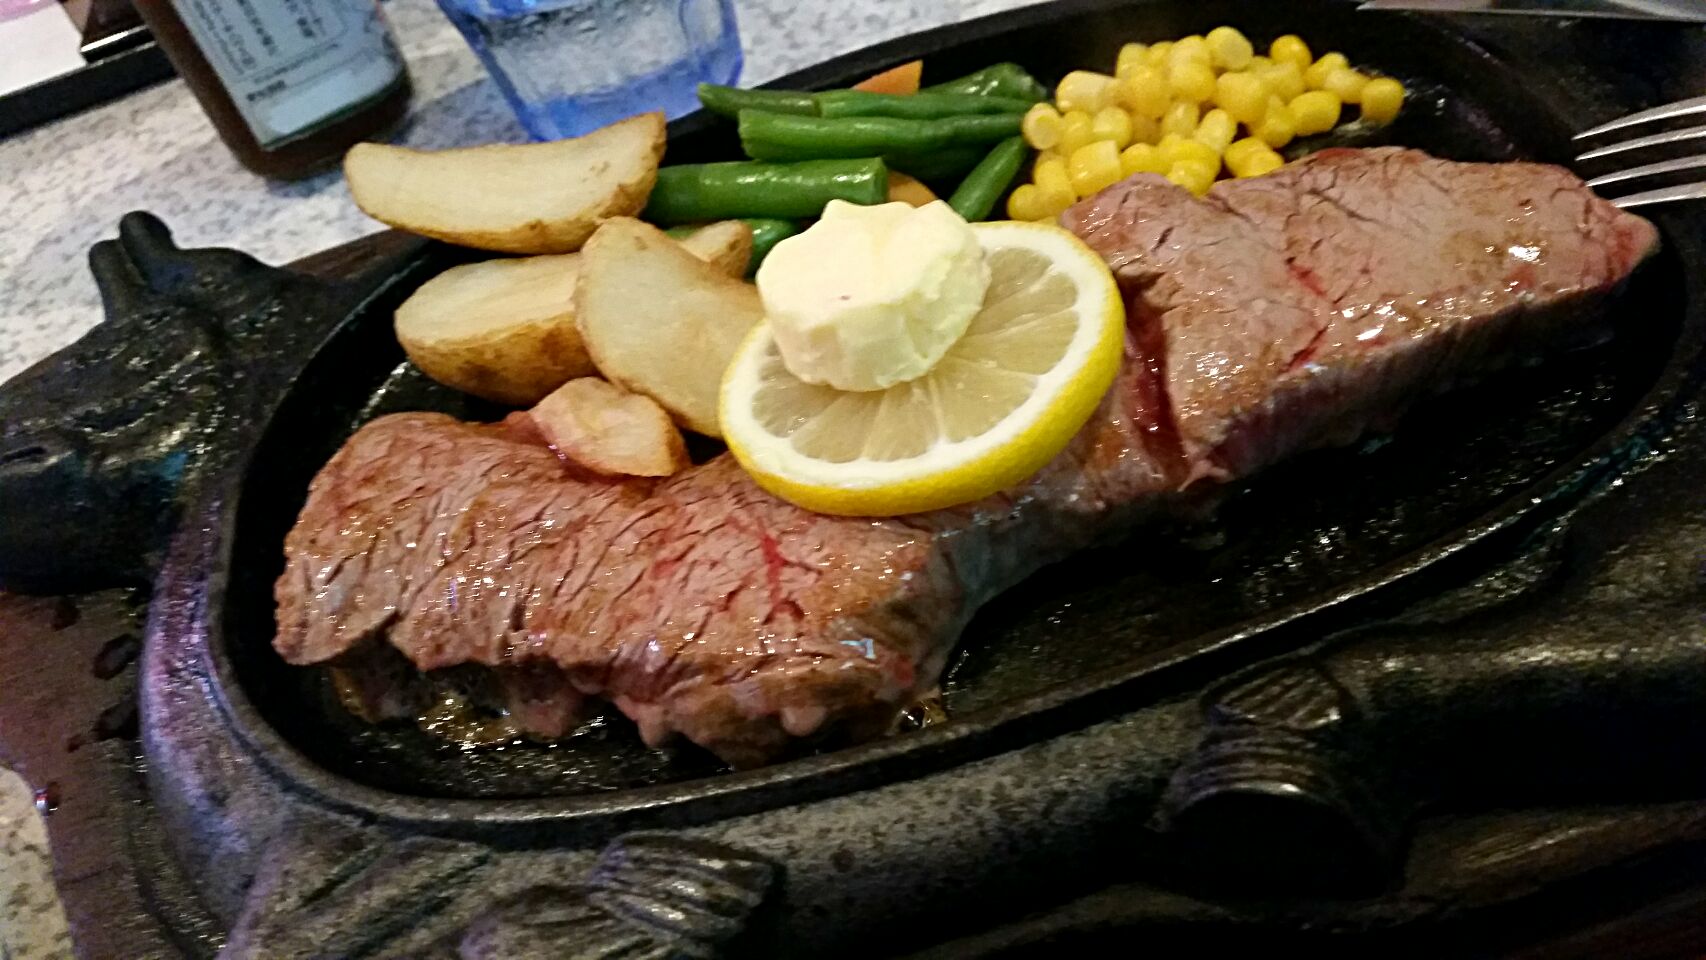 沖縄那覇「88」のステーキが美味しそう♡海で遊んだ後に食べたい絶品グルメ